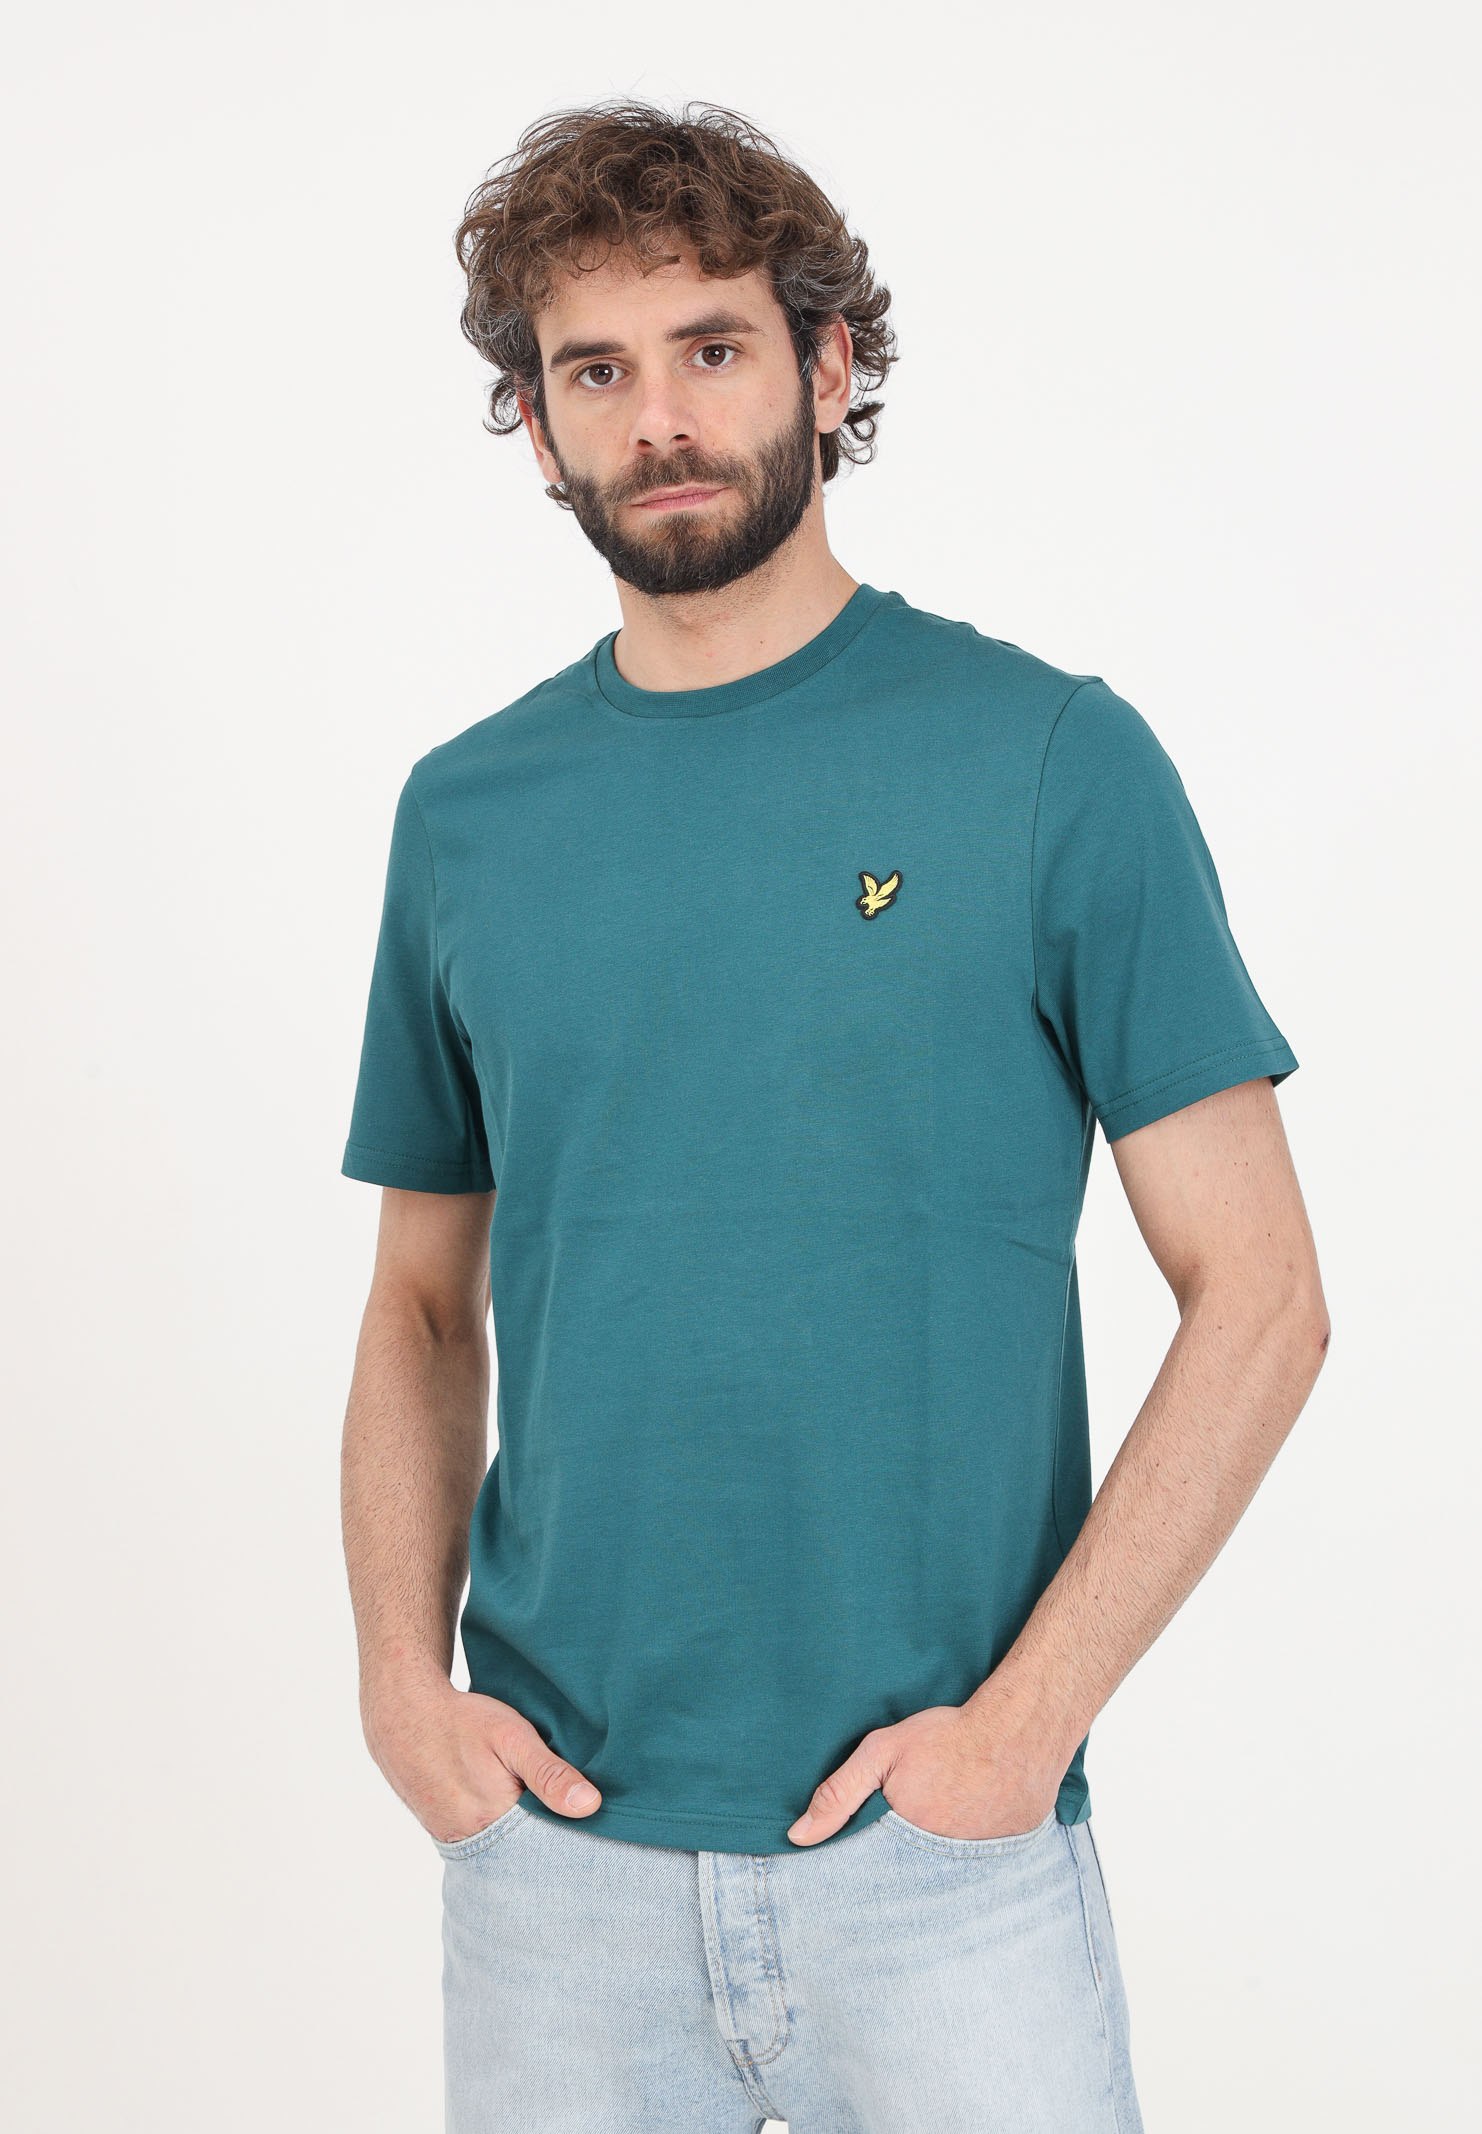 T-shirt da uomo verde patch logo golden eagle